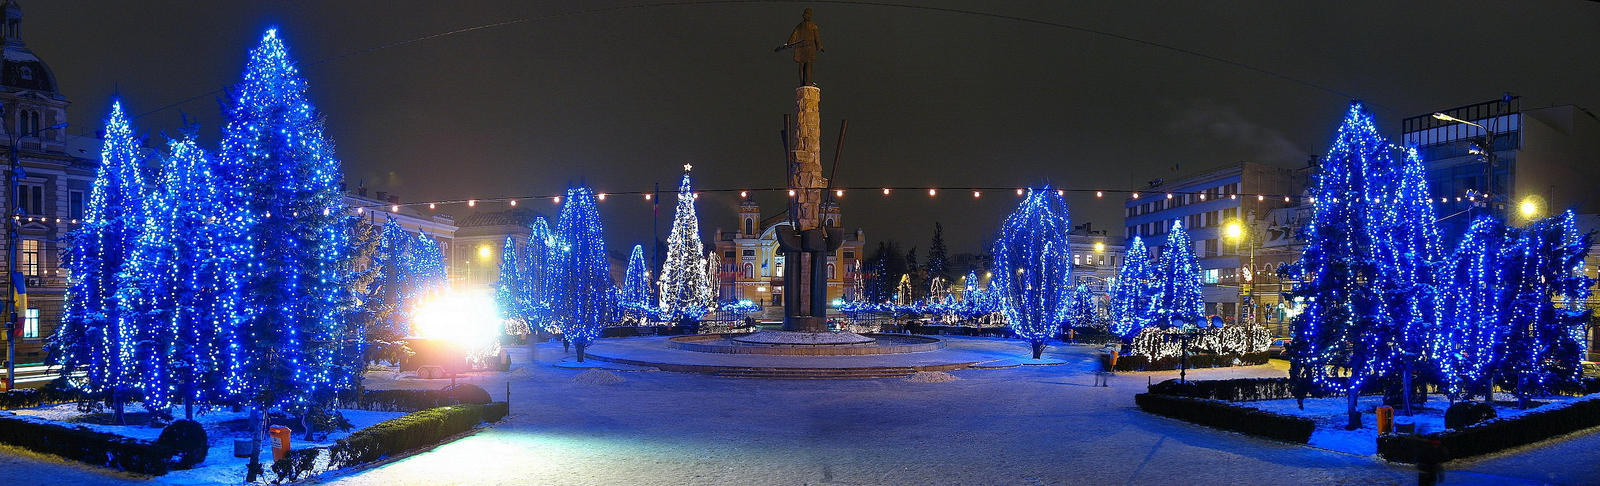 The 'Avram Iancu' Square